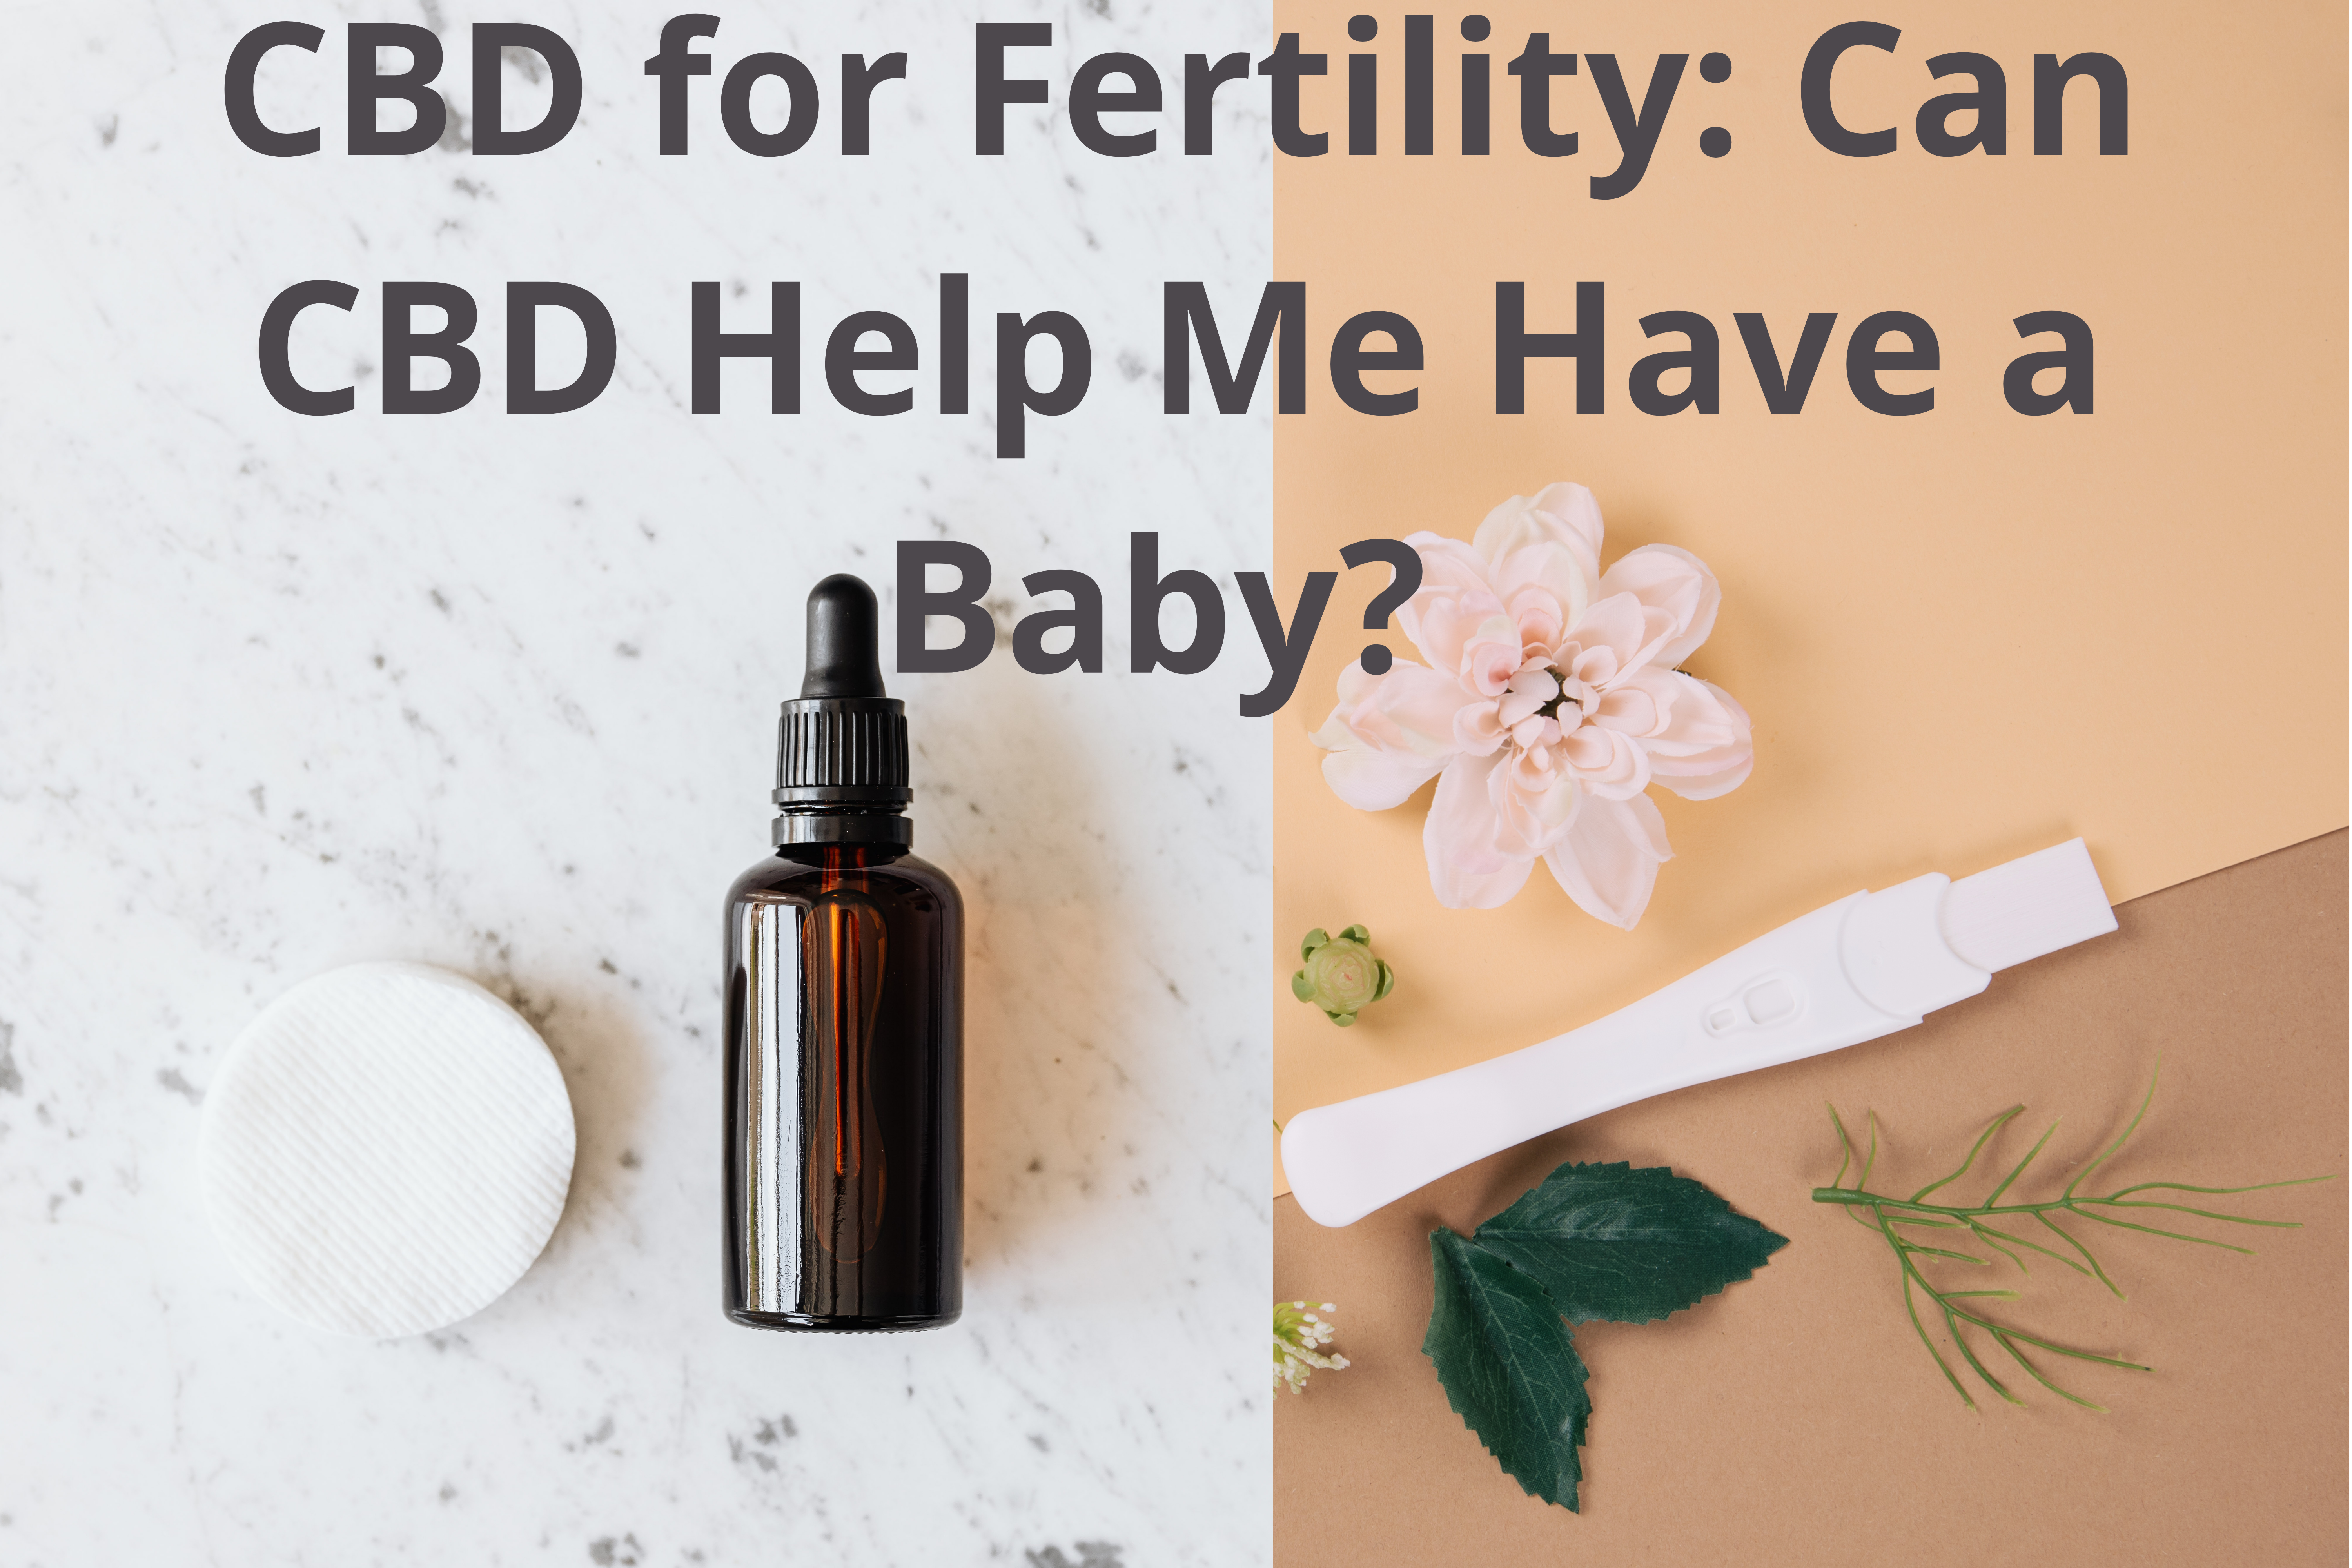 CBD helps fertility